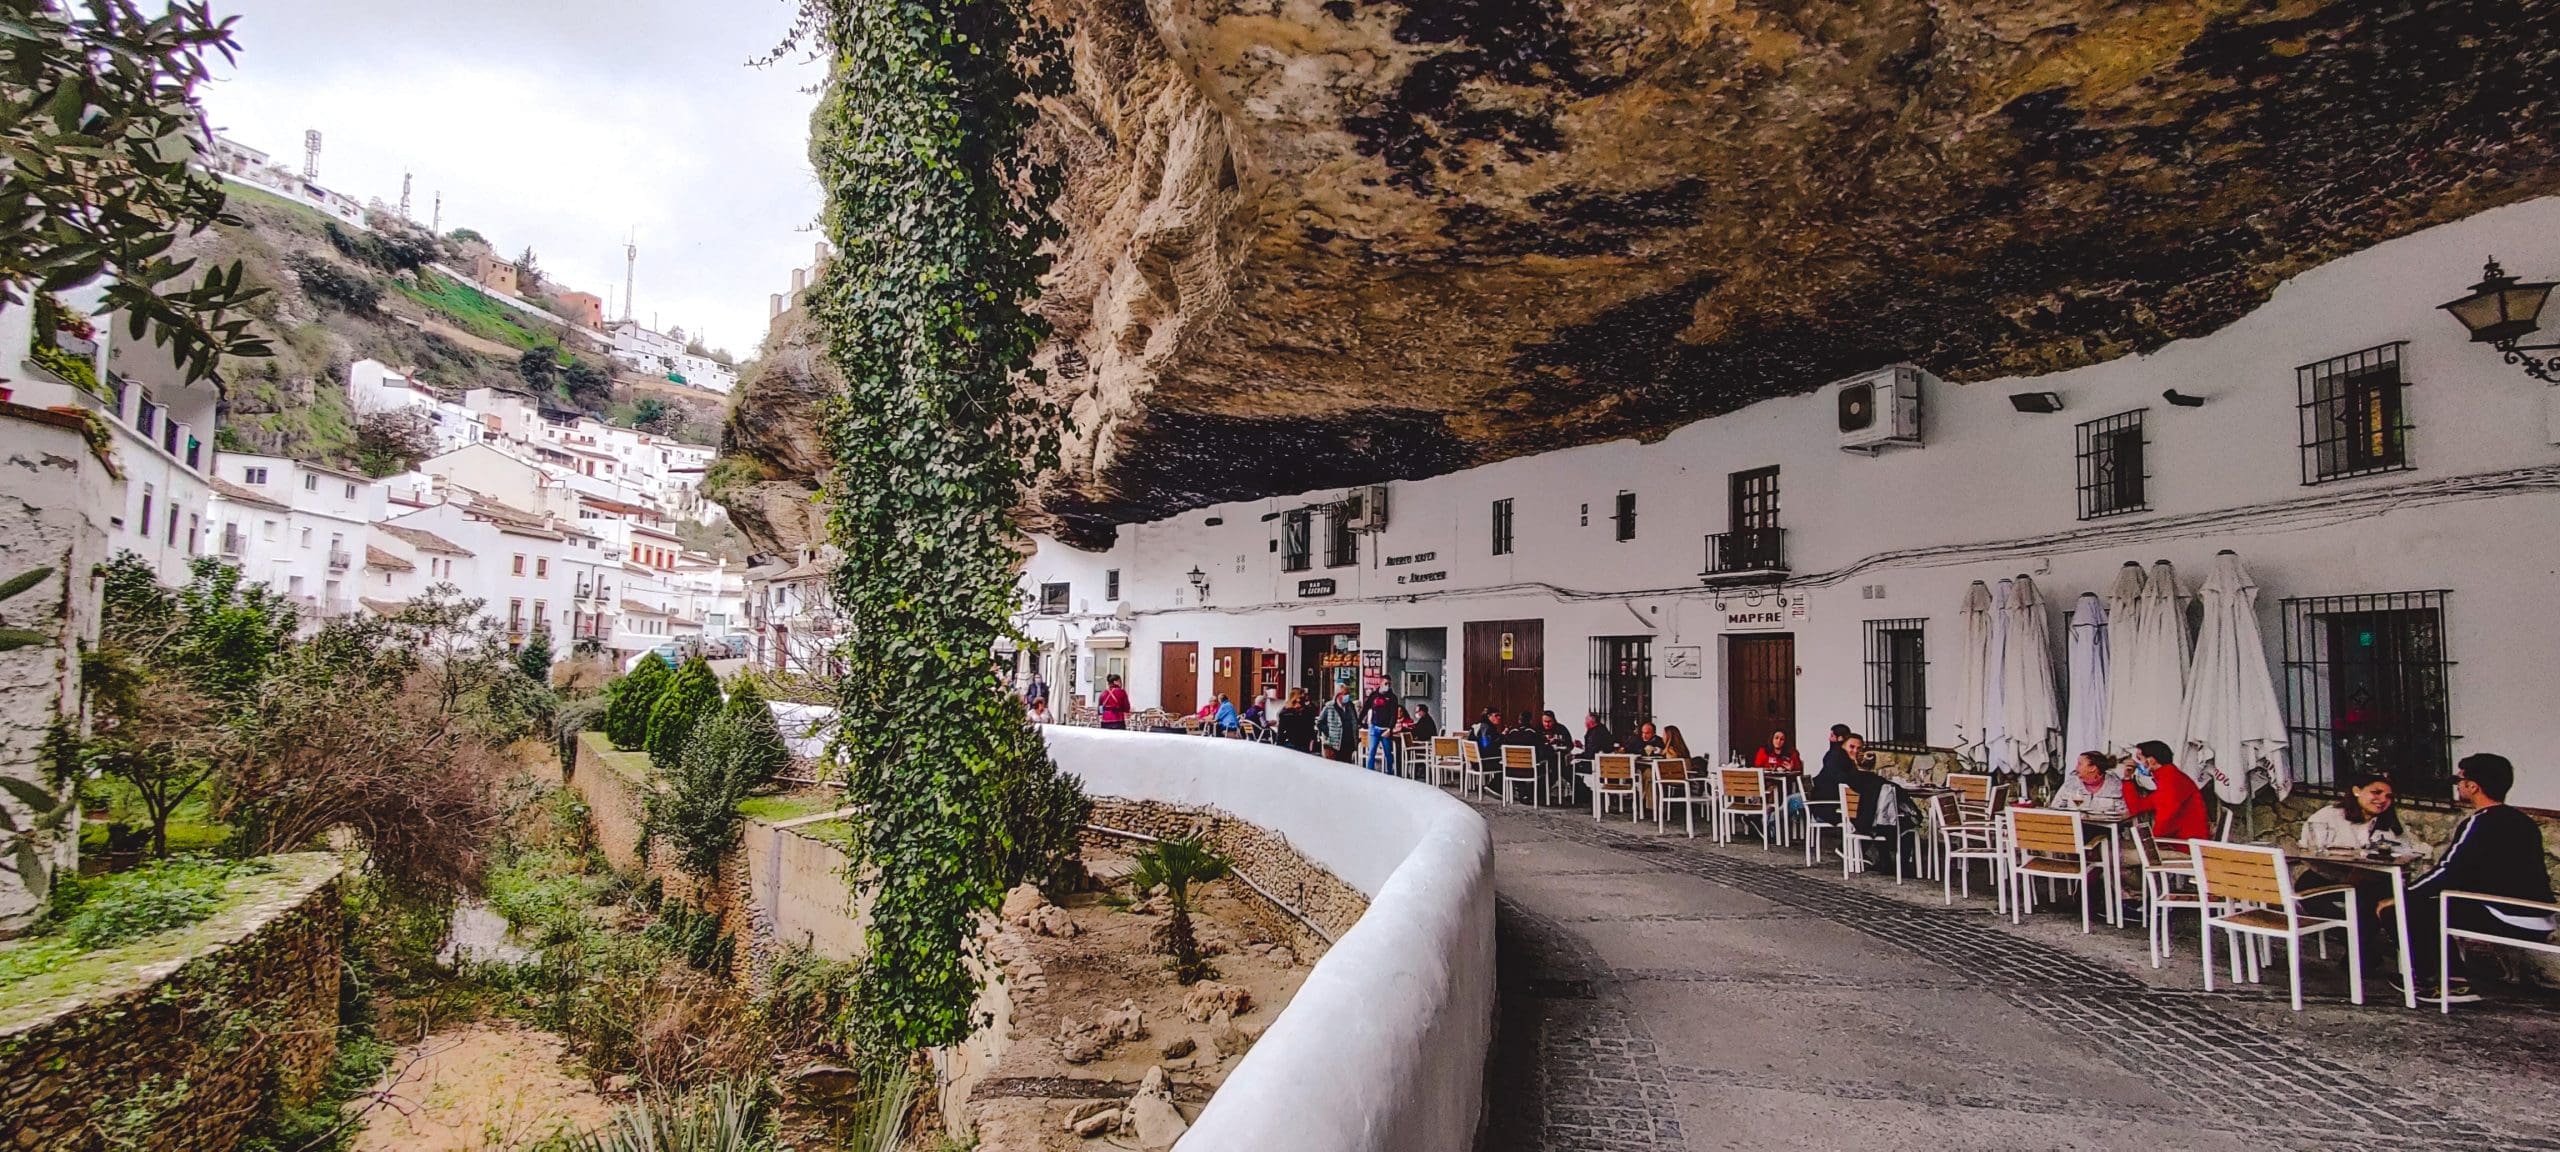 Σετενίλ ντε λας Μποντέγκας: Η γραφική πόλη της Ισπανίας μέσα σε βράχουςΠηγή φωτογραφίας: https://theorangebackpack.nl/